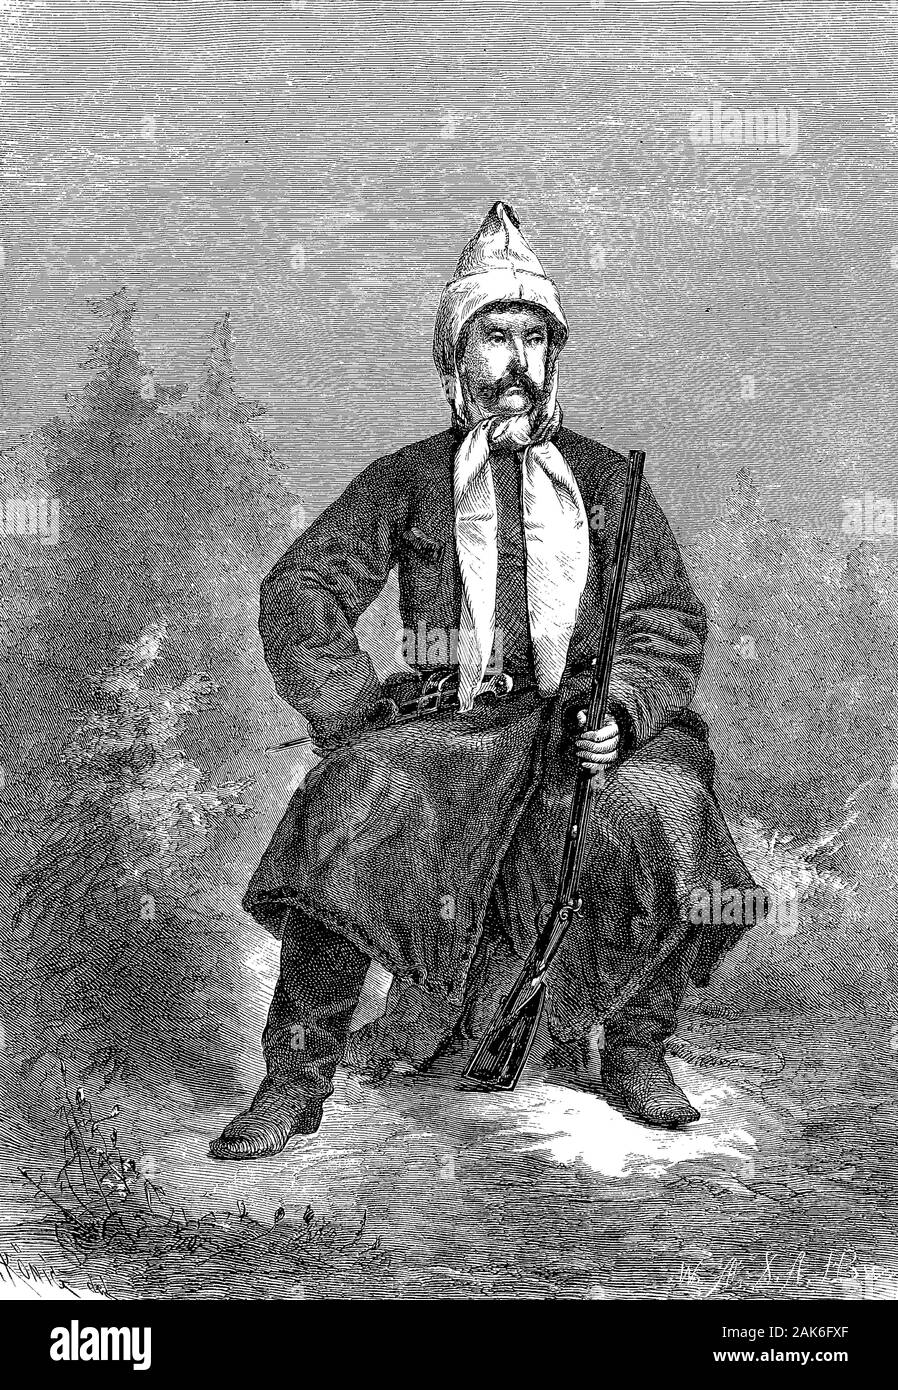 En costume de chasse Prince Suwarow, Alexandre Vassilievitch Souvorov Rymnikski, 1730-1800, un célèbre généralissime russe et est toujours considéré comme l'un des plus grands stratèges de l'époque moderne., gravure sur bois de 1864 Banque D'Images